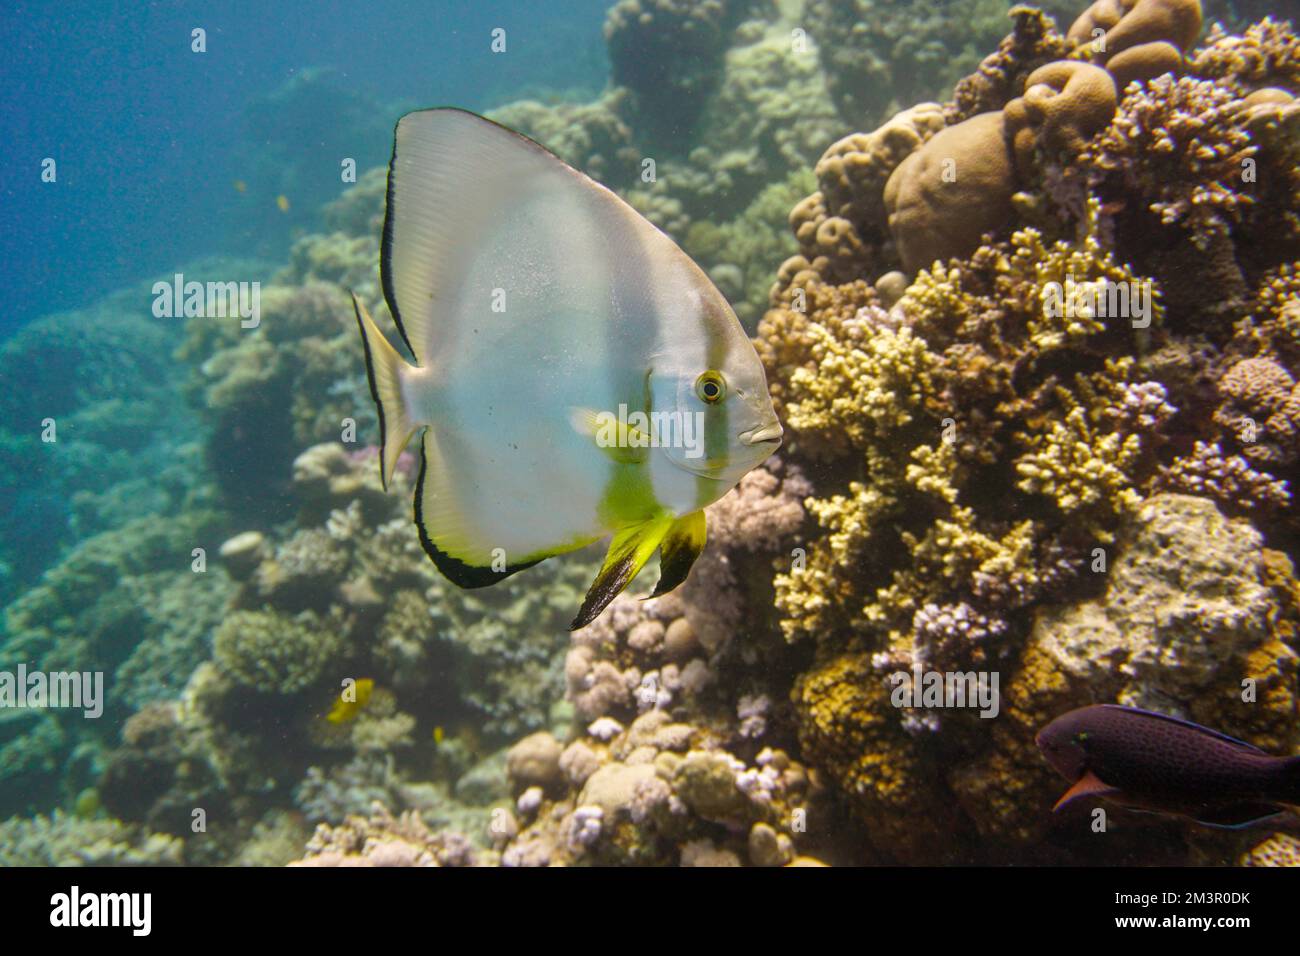 Magnifique poisson de corail nageant dans le récif de corail coloré dans la mer Rouge en Egypte. Plongée sous-marine photographie sous-marine Banque D'Images